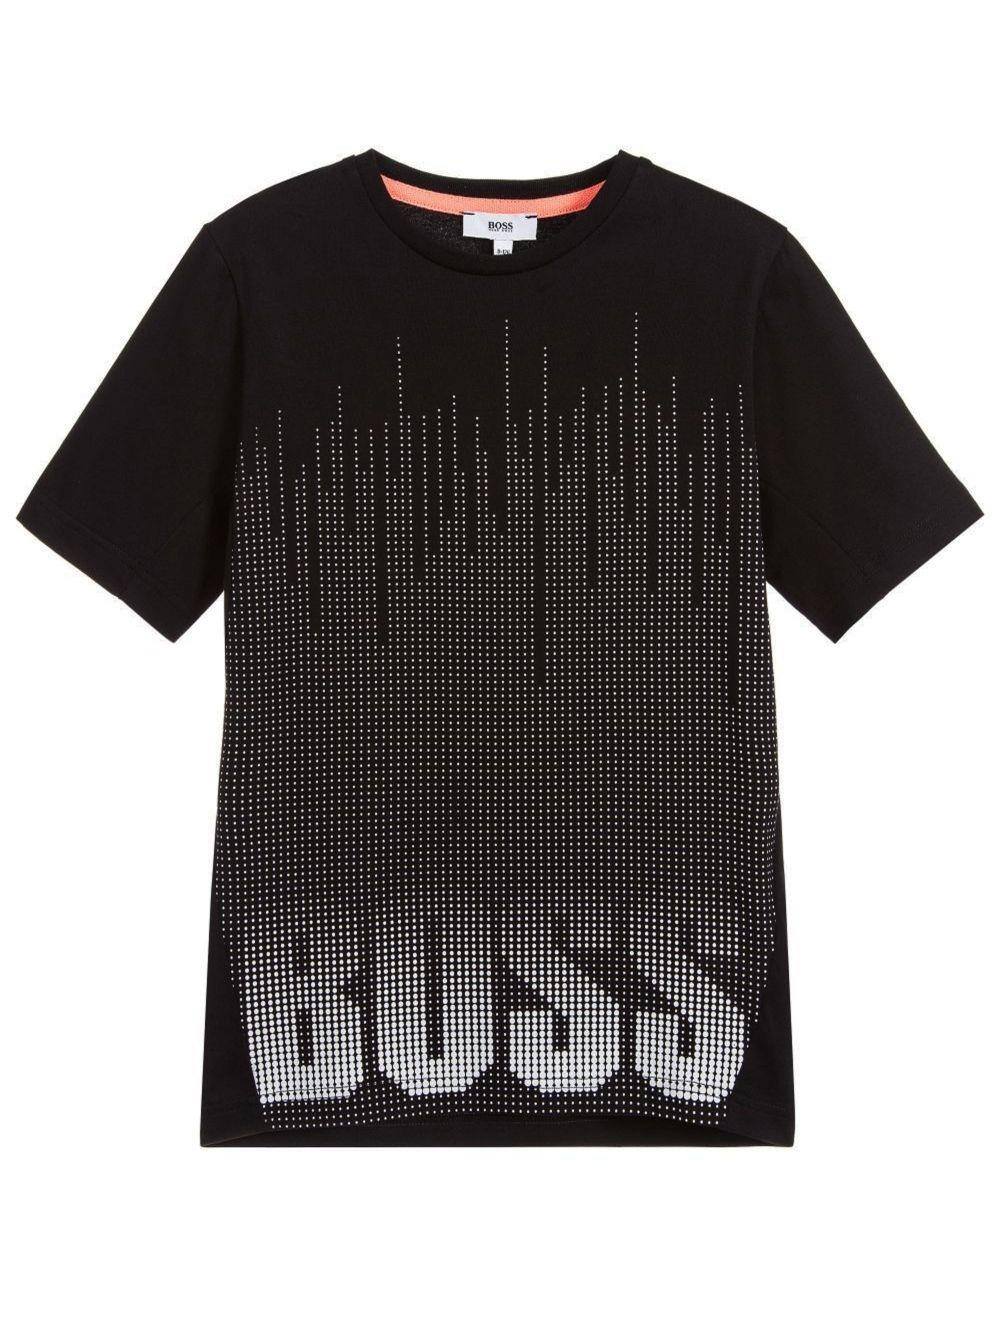 Black Dot Logo - Hugo Boss Boys Black Dot Logo T-Shirt | Children's Wear at Designerwear